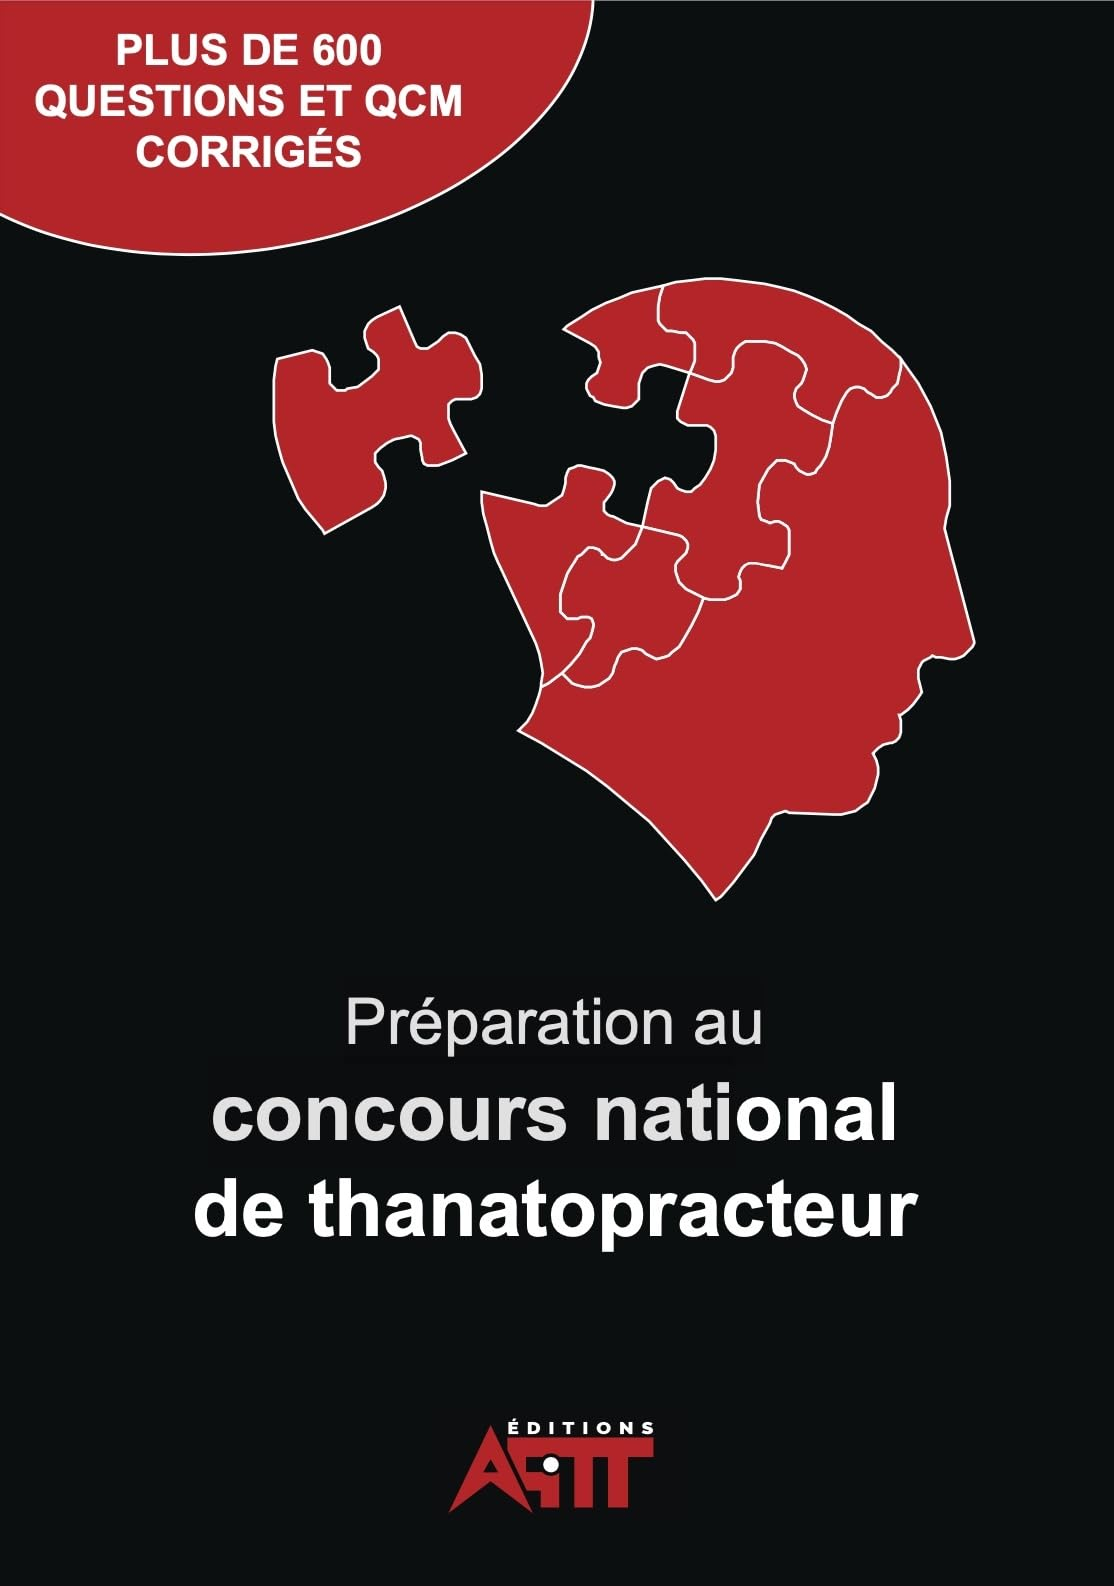 Préparation au concours national de Thanatopracteur: PLUS DE 600 QUESTIONS, QCM ET CORRIGÉS